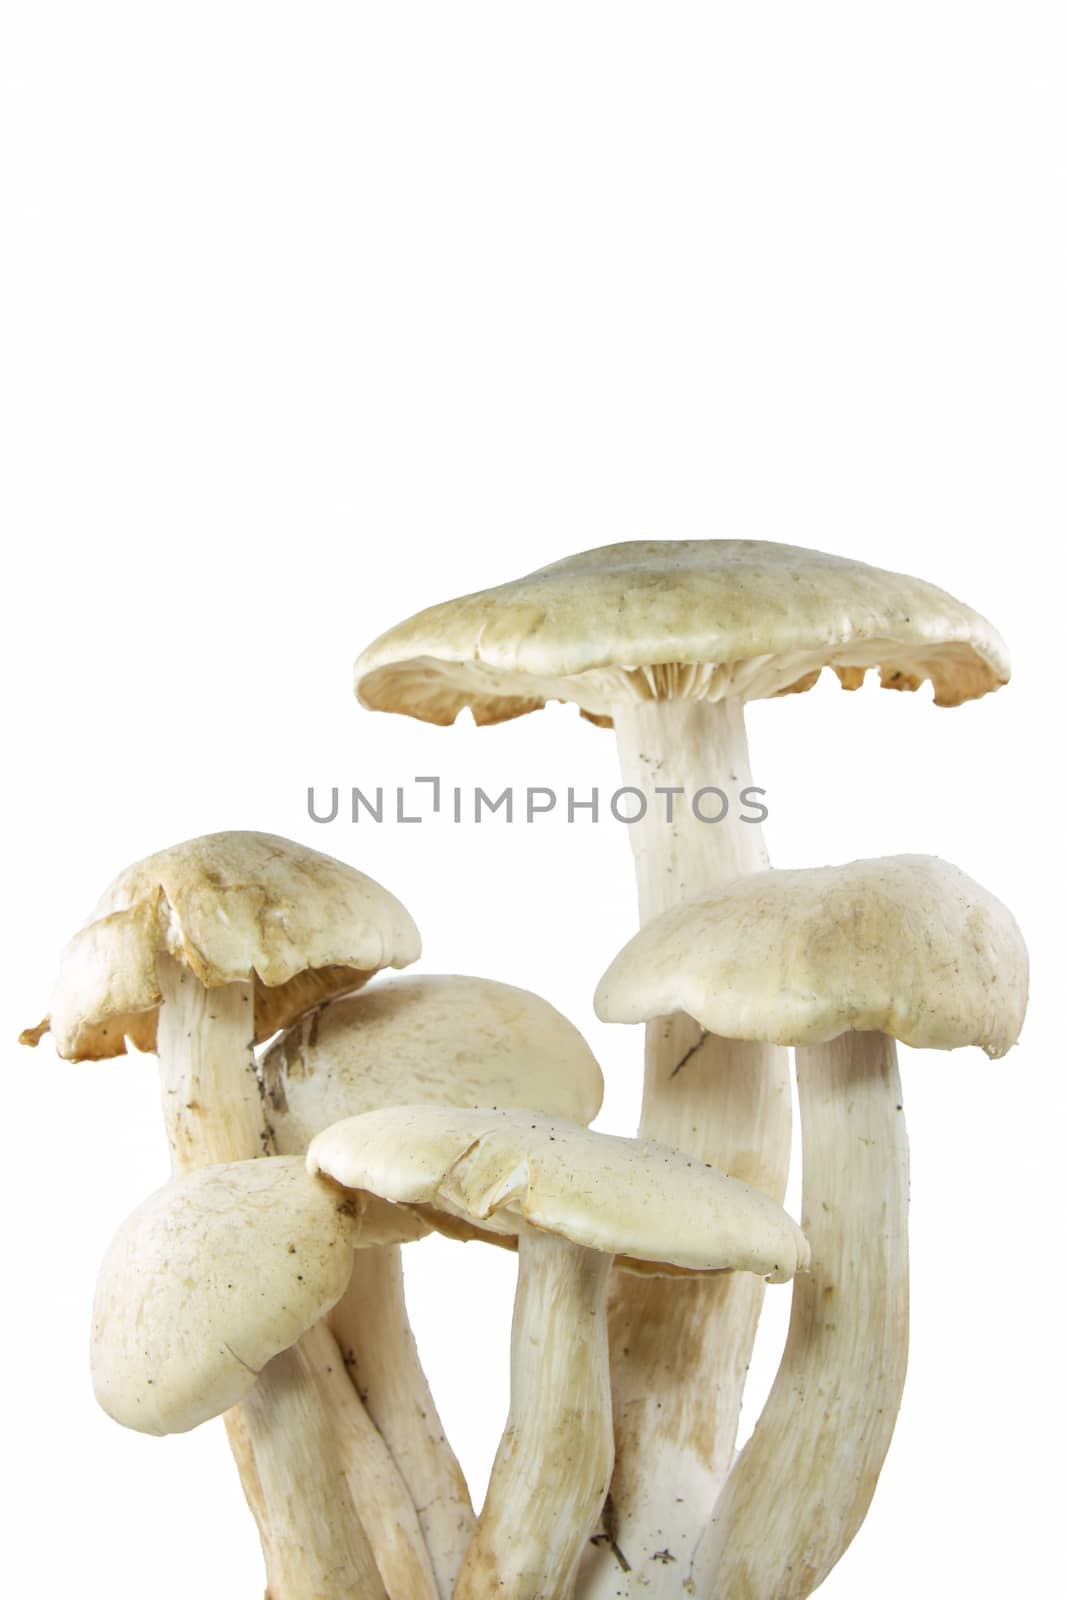 group of mushroom isolated on white background